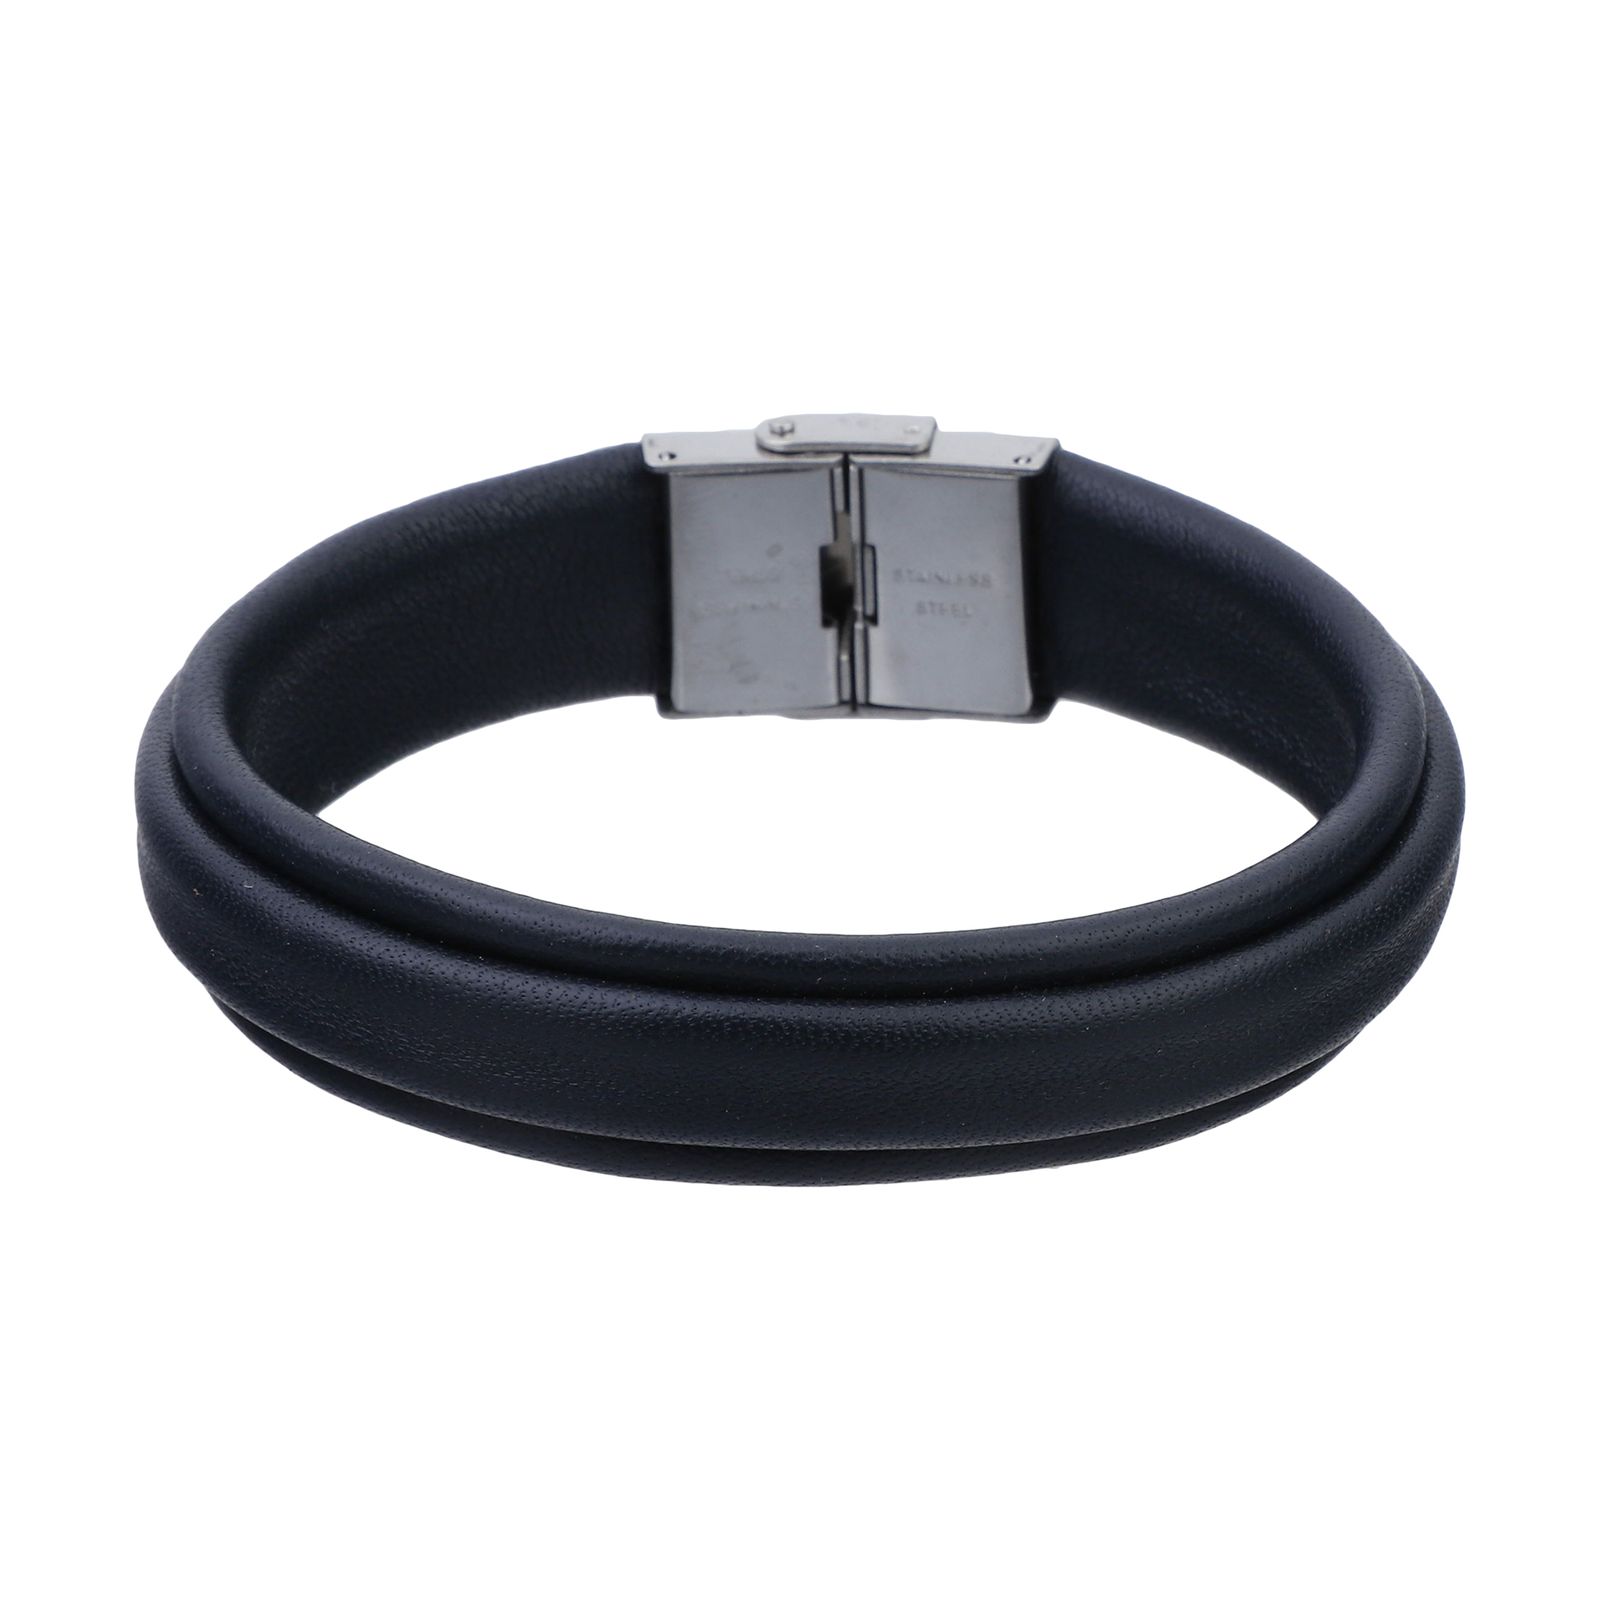 دستبند چرم لانکا مدل 6032 -  - 1